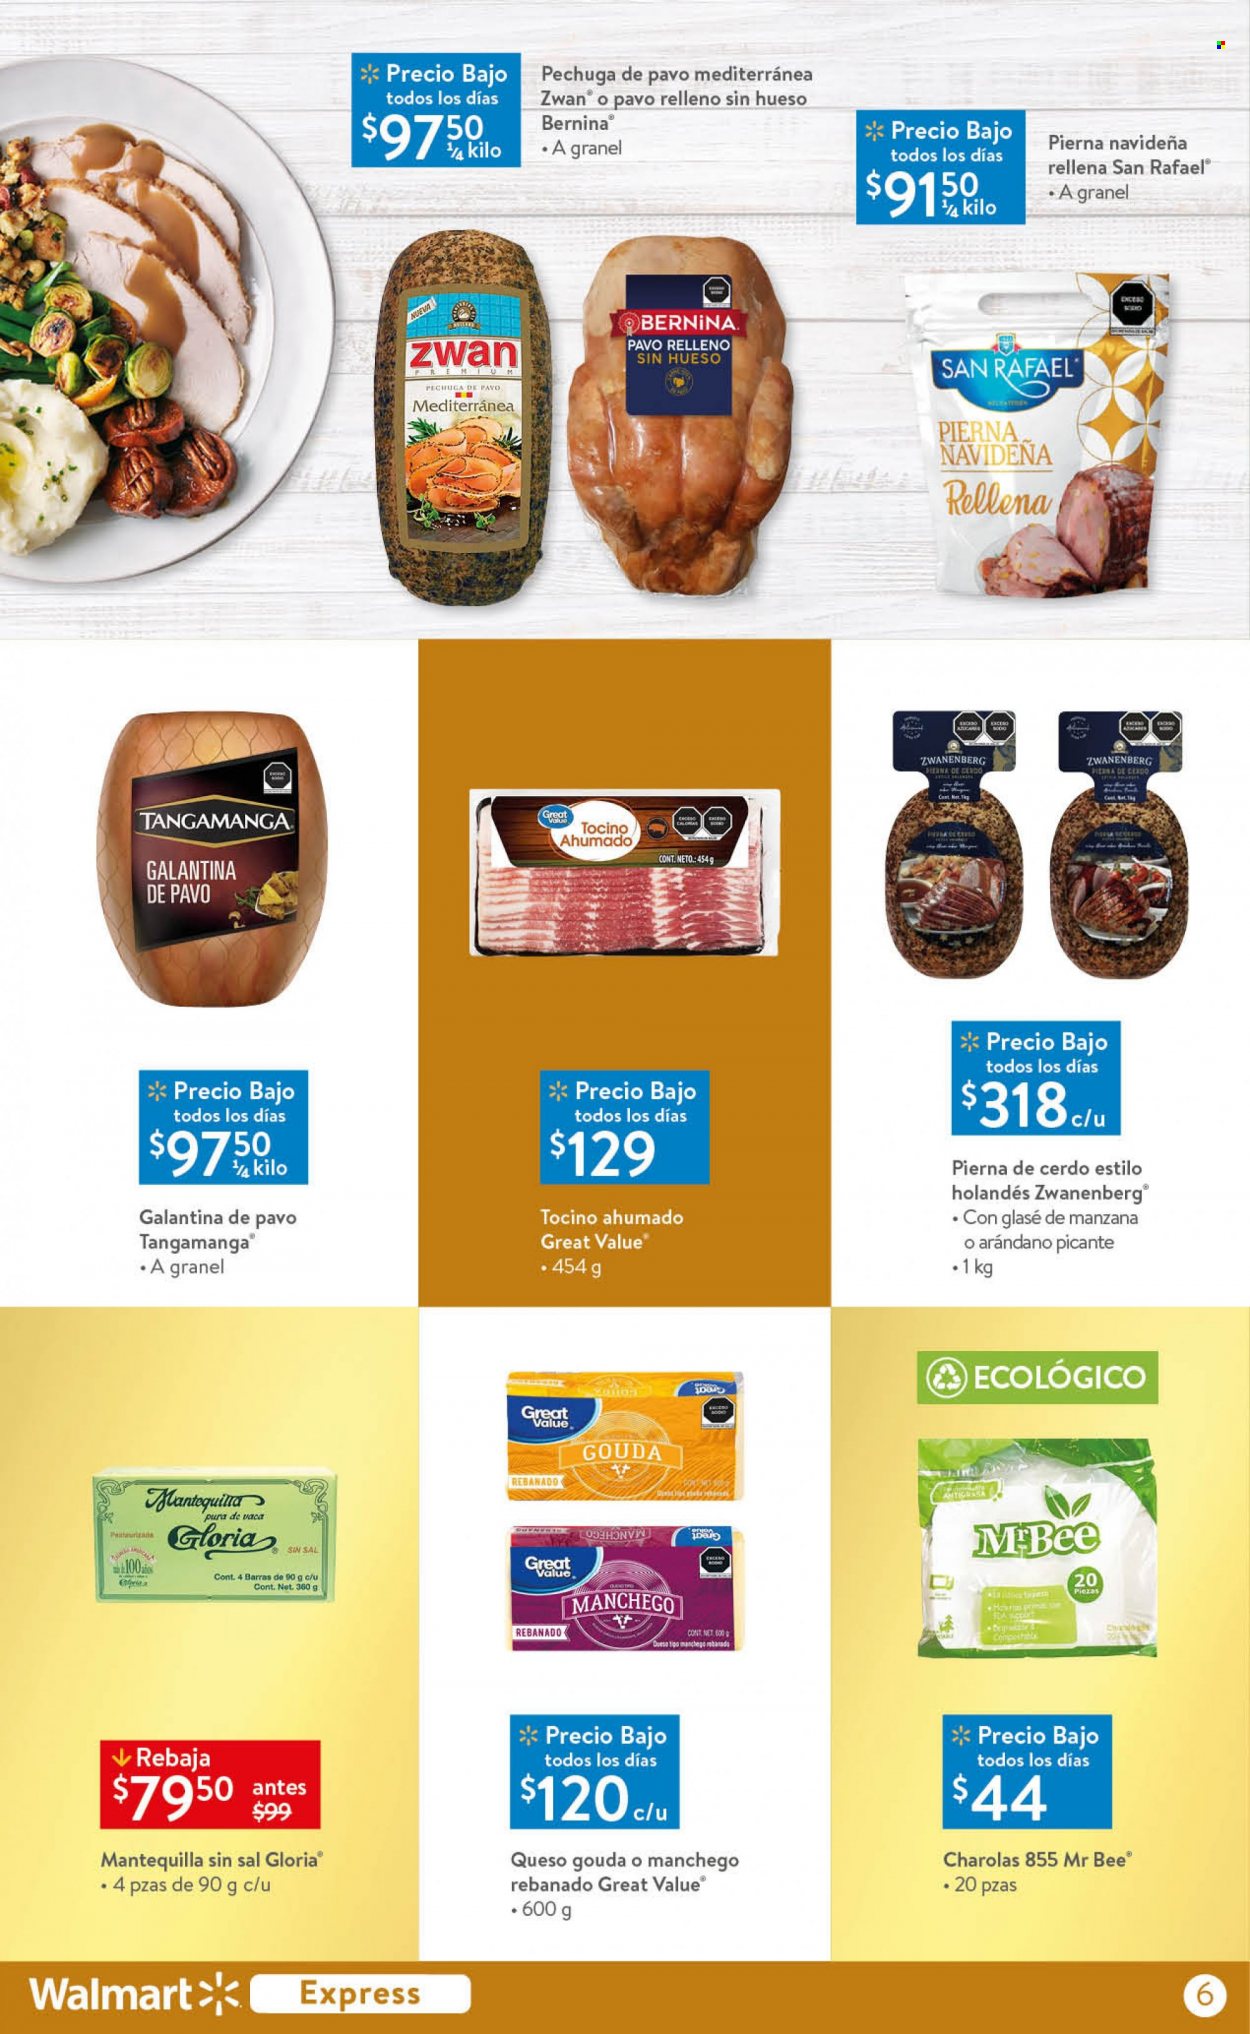 thumbnail - Folleto actual Walmart Express - 1.12.2022 - 15.12.2022 - Ventas - pechuga de pavo, Zwan, pavo relleno, queso, gouda, mantequilla, quitagrasas. Página 6.